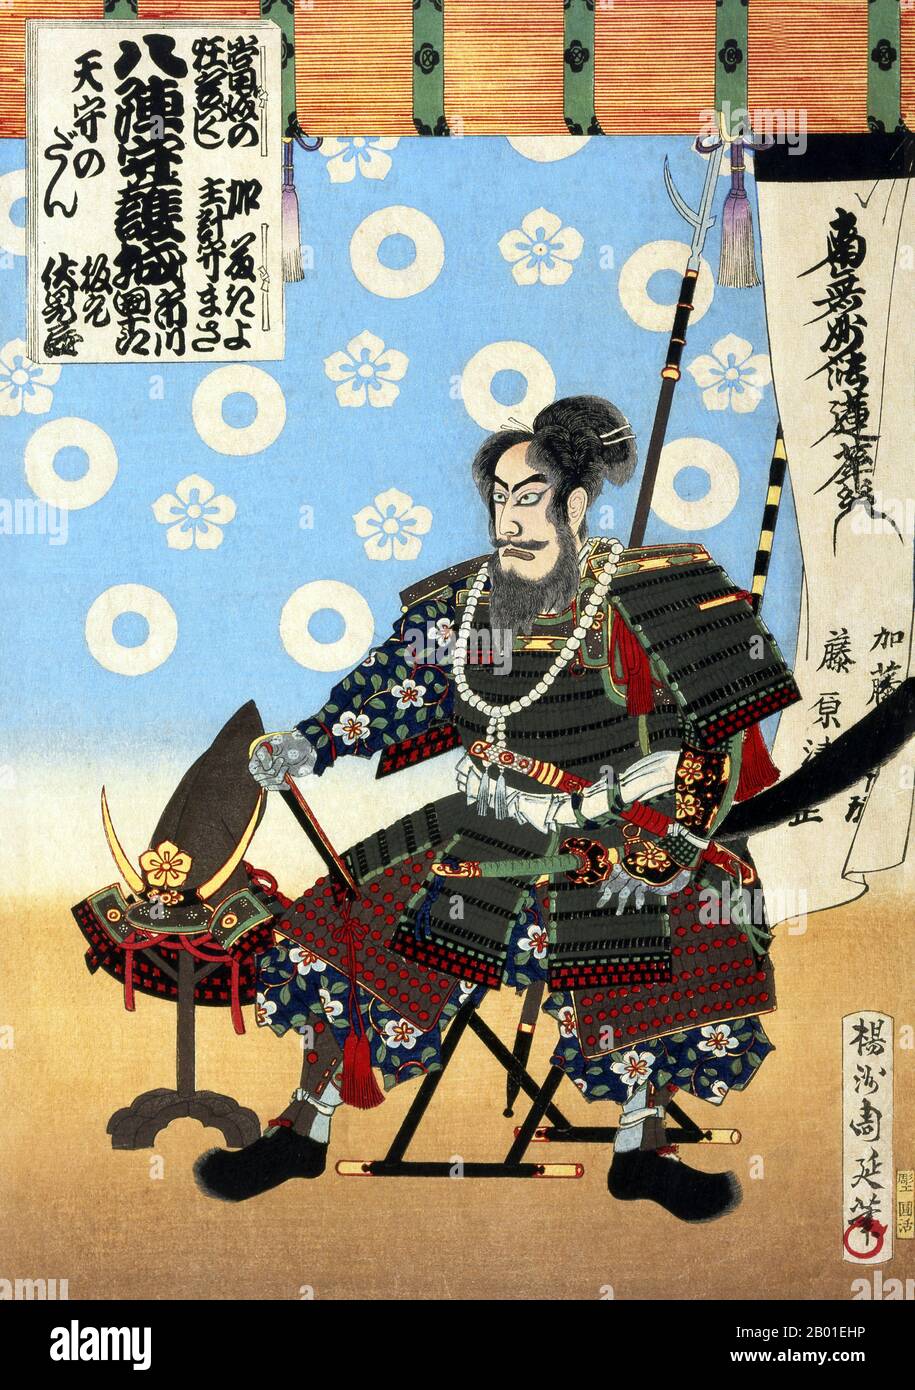 Japan: Der Krieger Kato Kiyomasa (1562-1611). Ukiyo-e-Blockdruck von Yoshu Chikanobu (1838-1912), 1886. Die angebliche Vergiftung des großen Kriegers Kato Kiyomasa war Gegenstand eines Kabuki-Stücks, das 1807 Premiere hatte, aber aufgrund der damaligen Zensur der Regierung wurde der Name der Hauptfigur in Sato Masakiyo geändert. Toyohara Chikanobu, unter seinen Zeitgenossen besser als Yōshū Chikanobu bekannt, war ein produktiver Holzblockkünstler aus der japanischen Meiji-Zeit. Seine Werke spiegeln den Übergang vom Zeitalter der Samurai zur Meiji-Moderne wider. Stockfoto